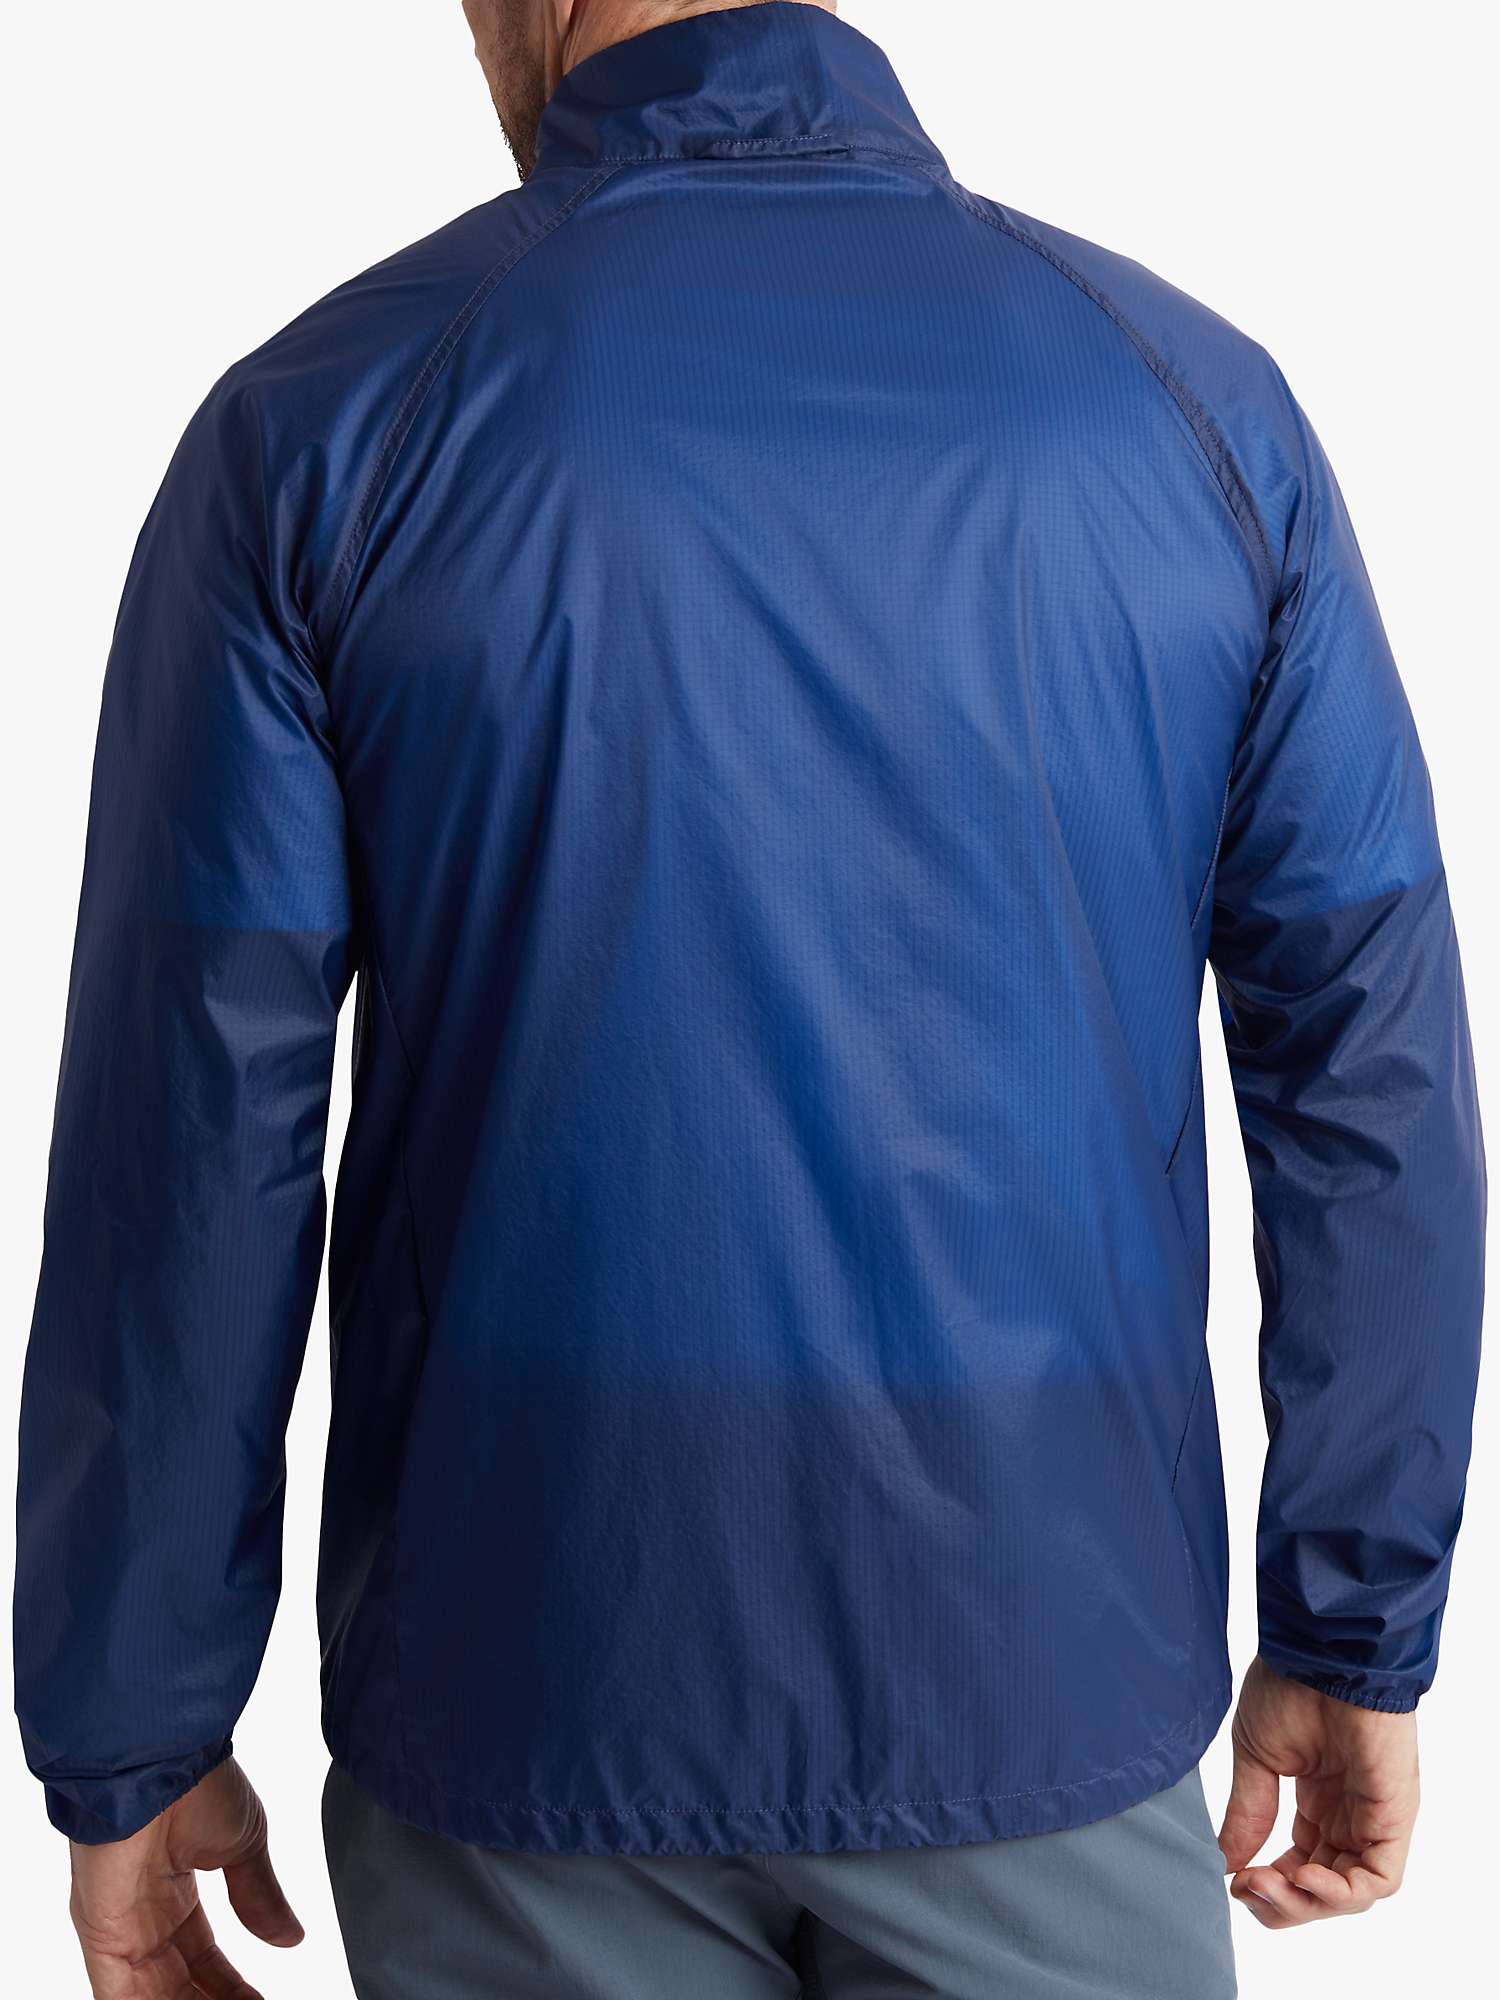 Buy Rohan Nimbus Men's Super Lightweight Windproof Jacket, Stratus Blue Online at johnlewis.com